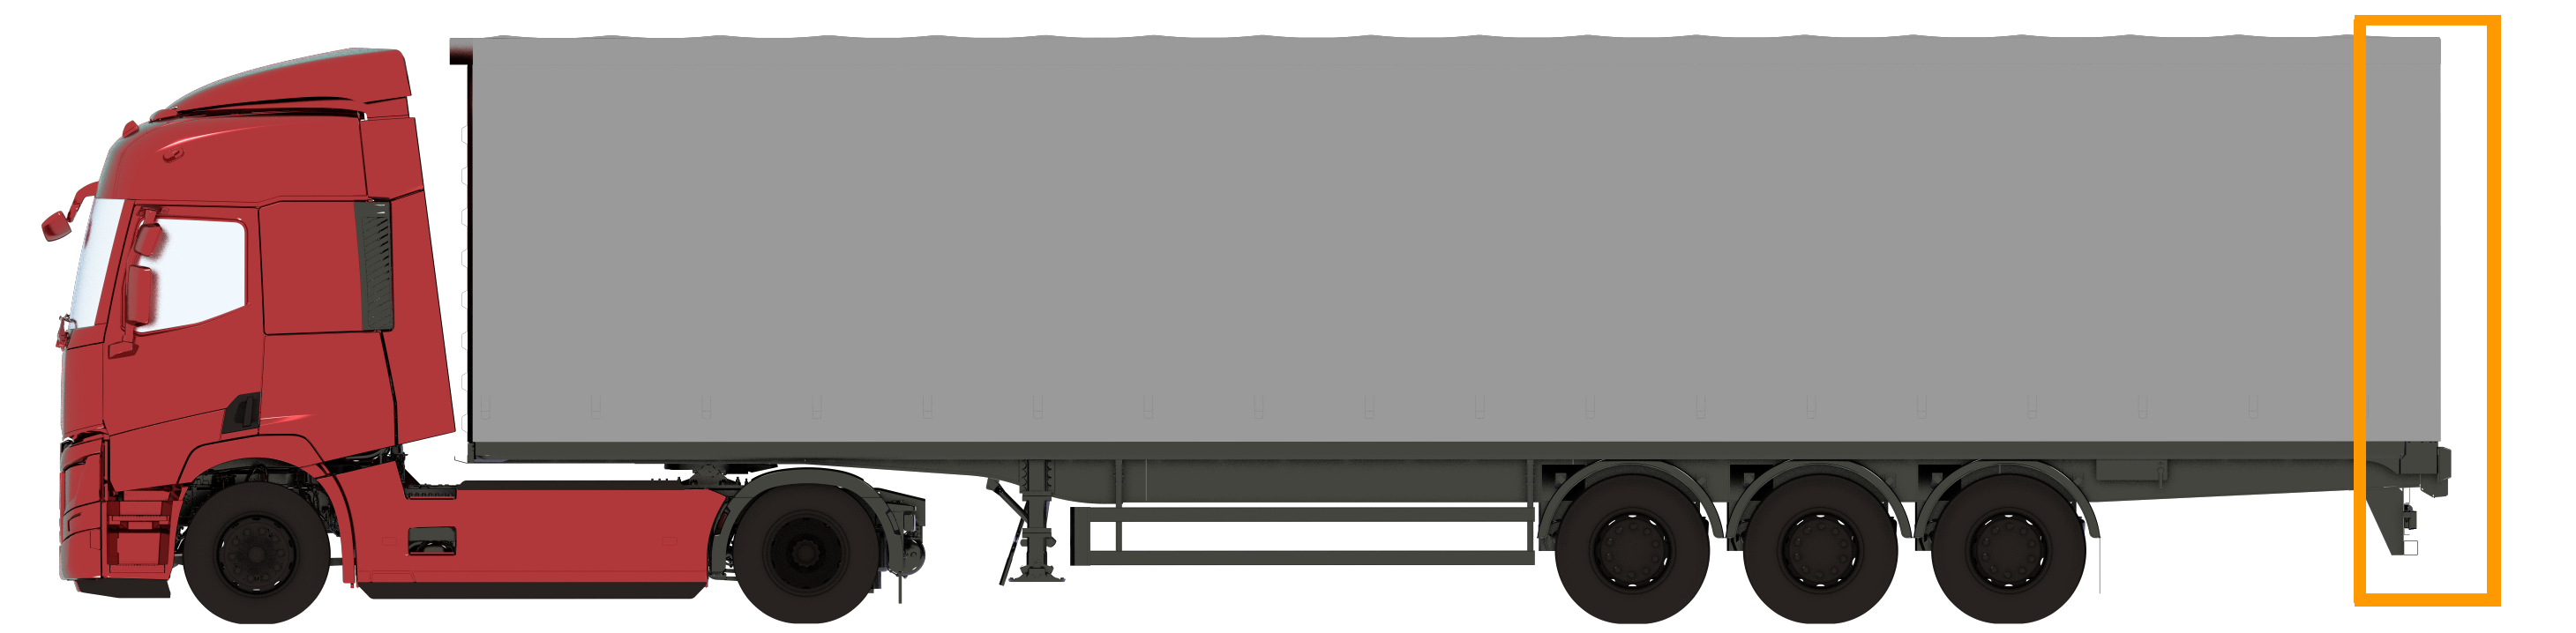 illustration d'un camion avec remorque parallélépipédique